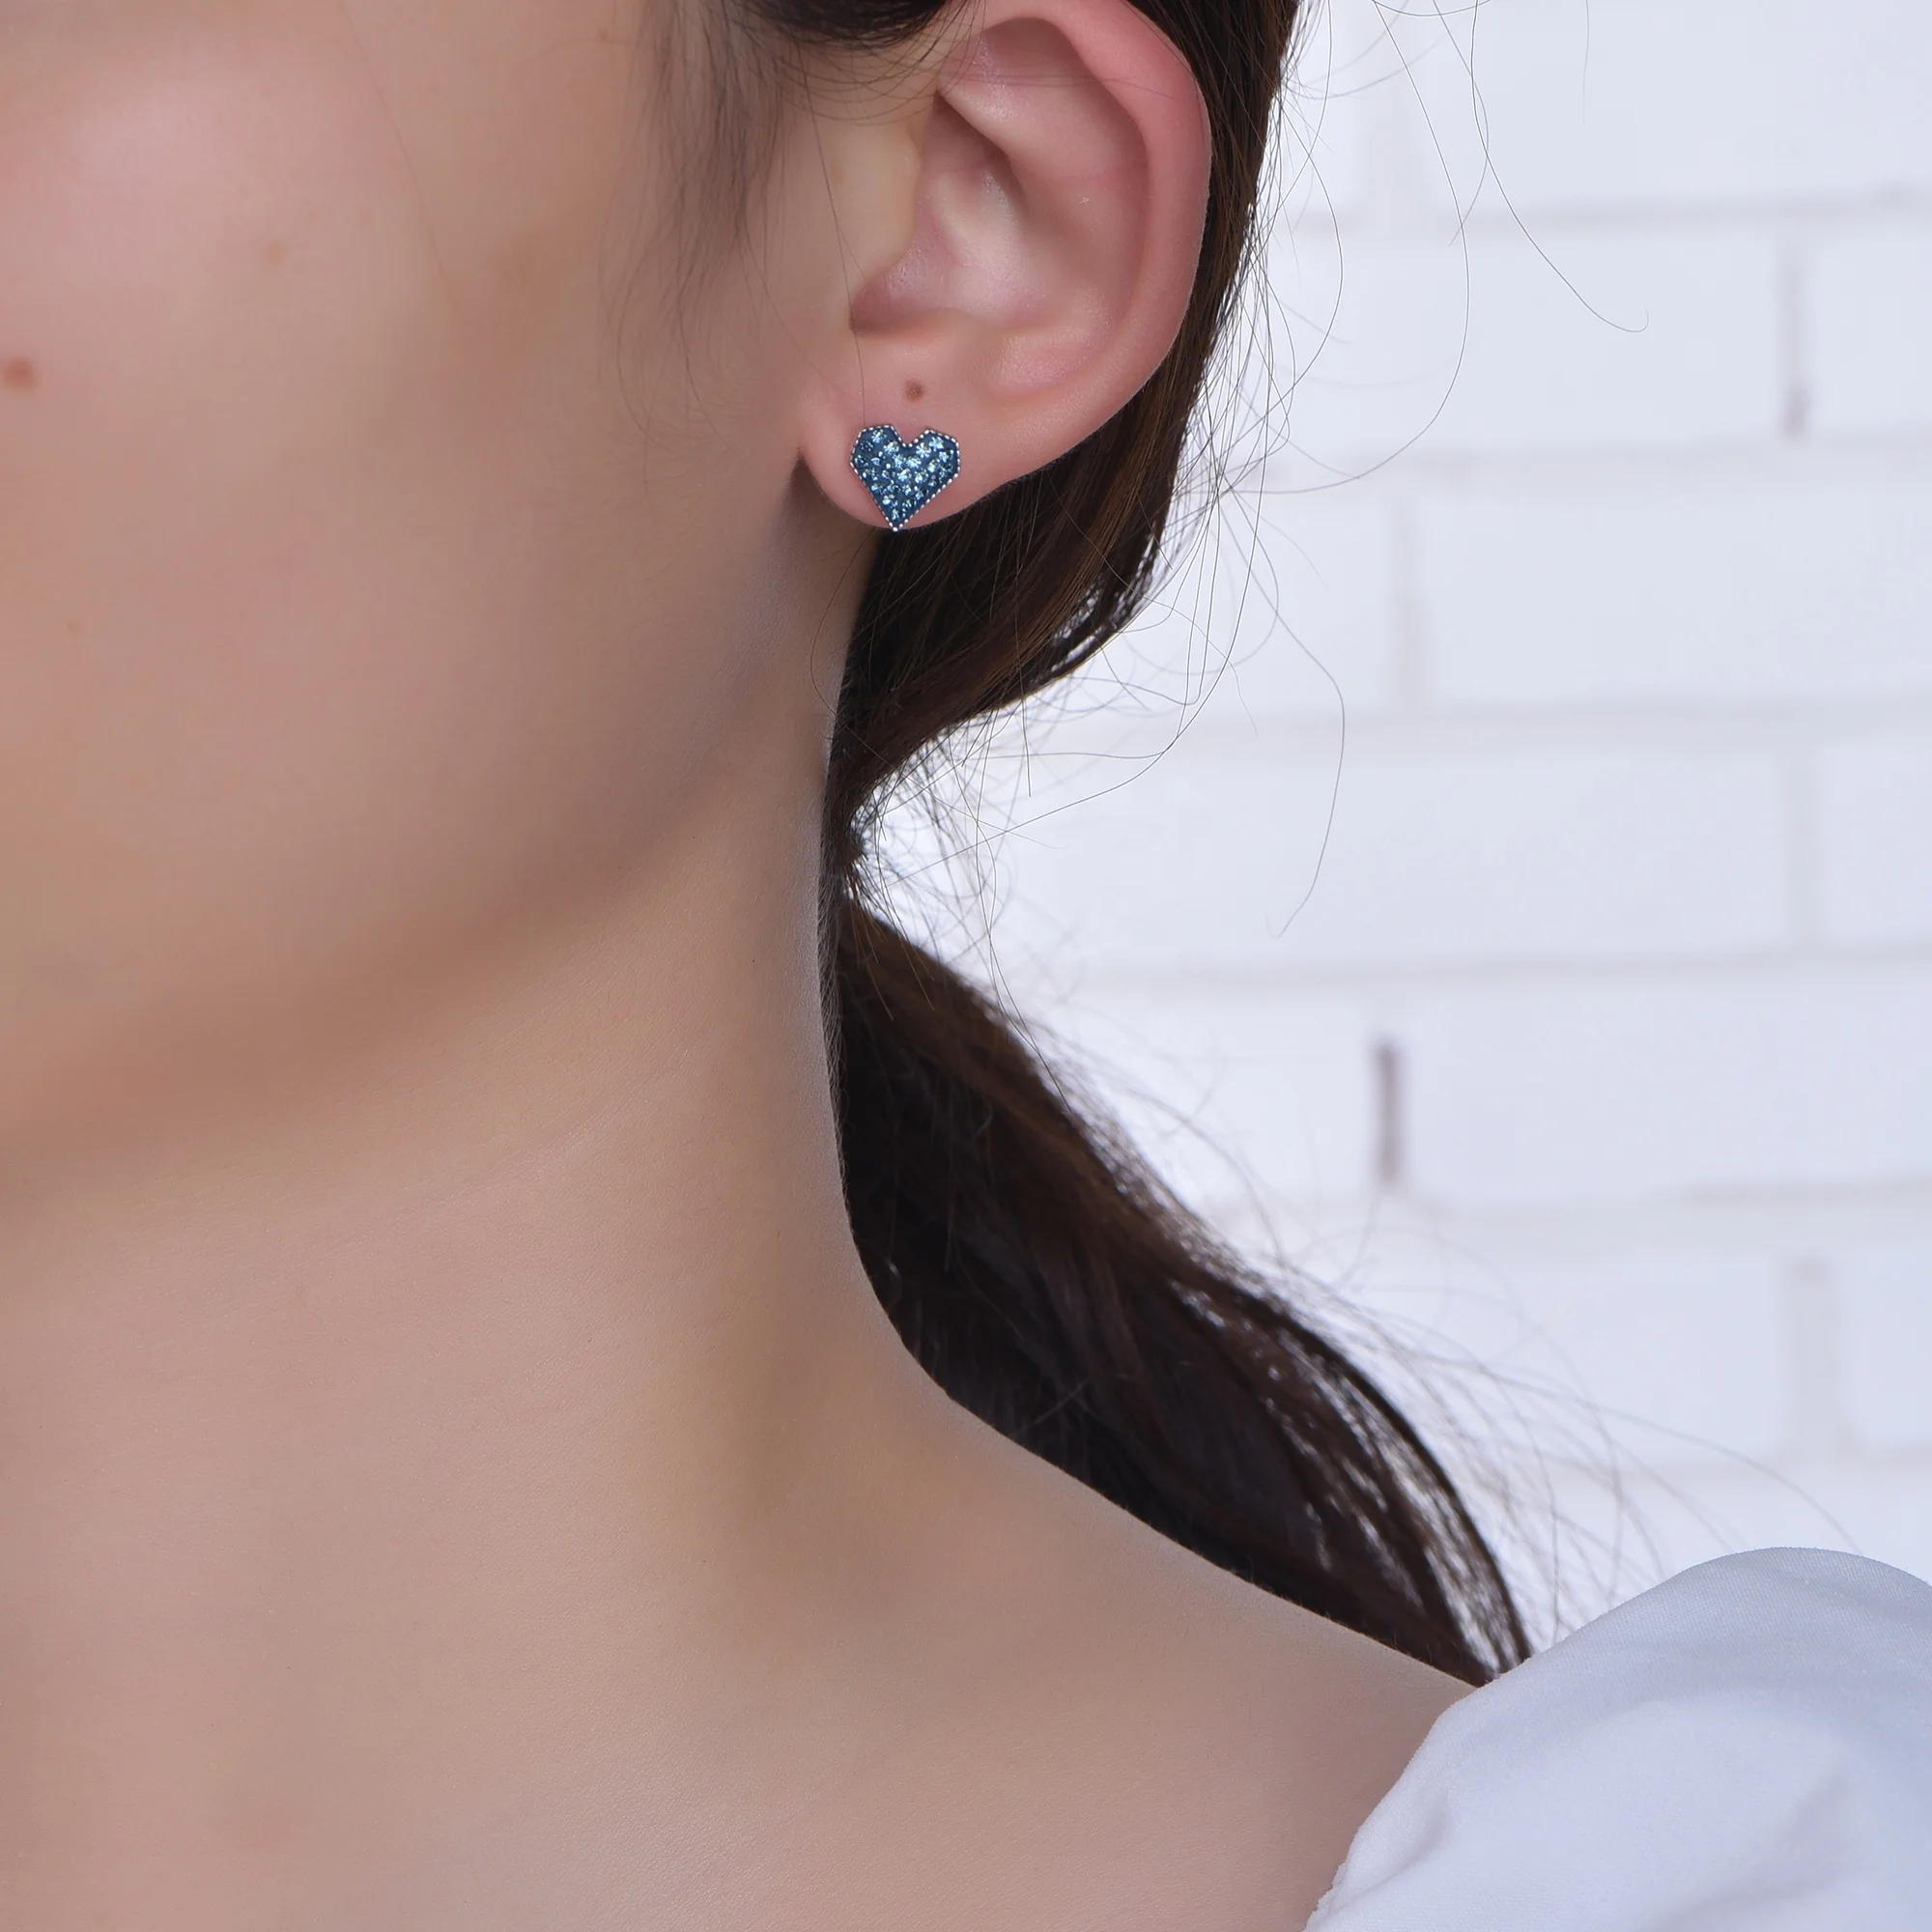 heart diamond raw stone stud earrings for Women zirconia stud earrings ladies fashion jewelry 925 sterling silver stud earring